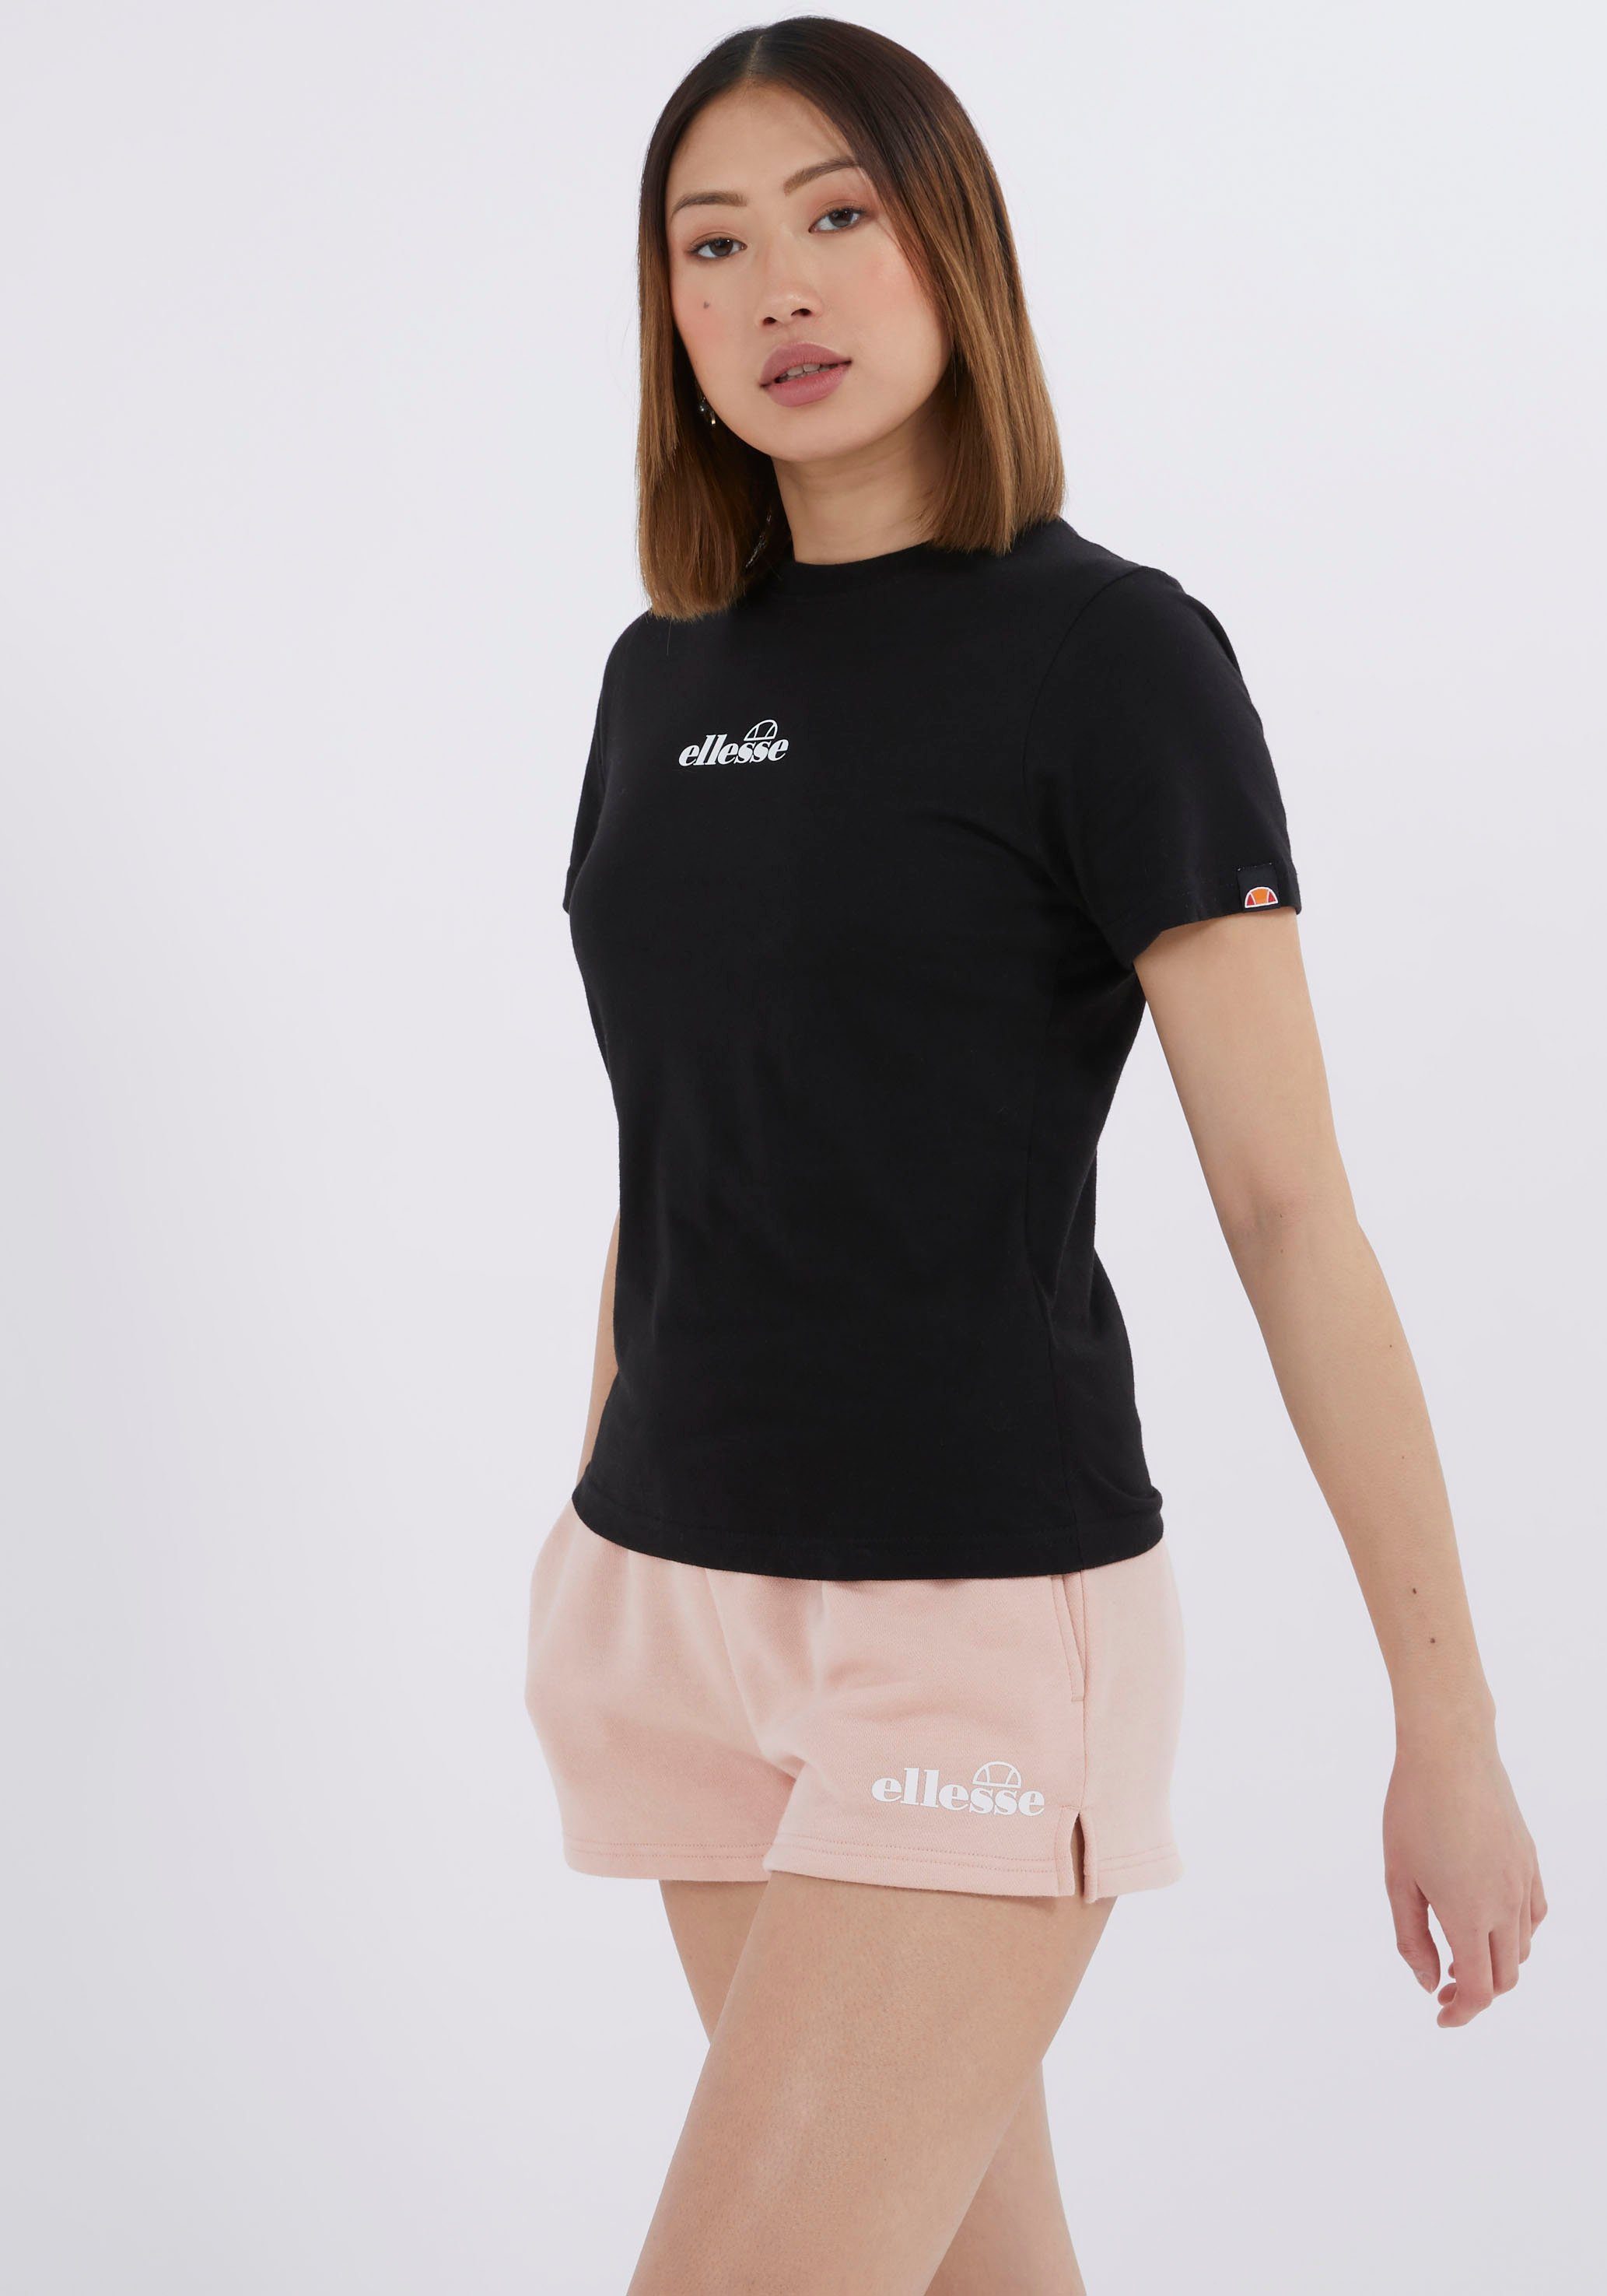 kaufen | für Damen ellesse Sport T-Shirts OTTO online